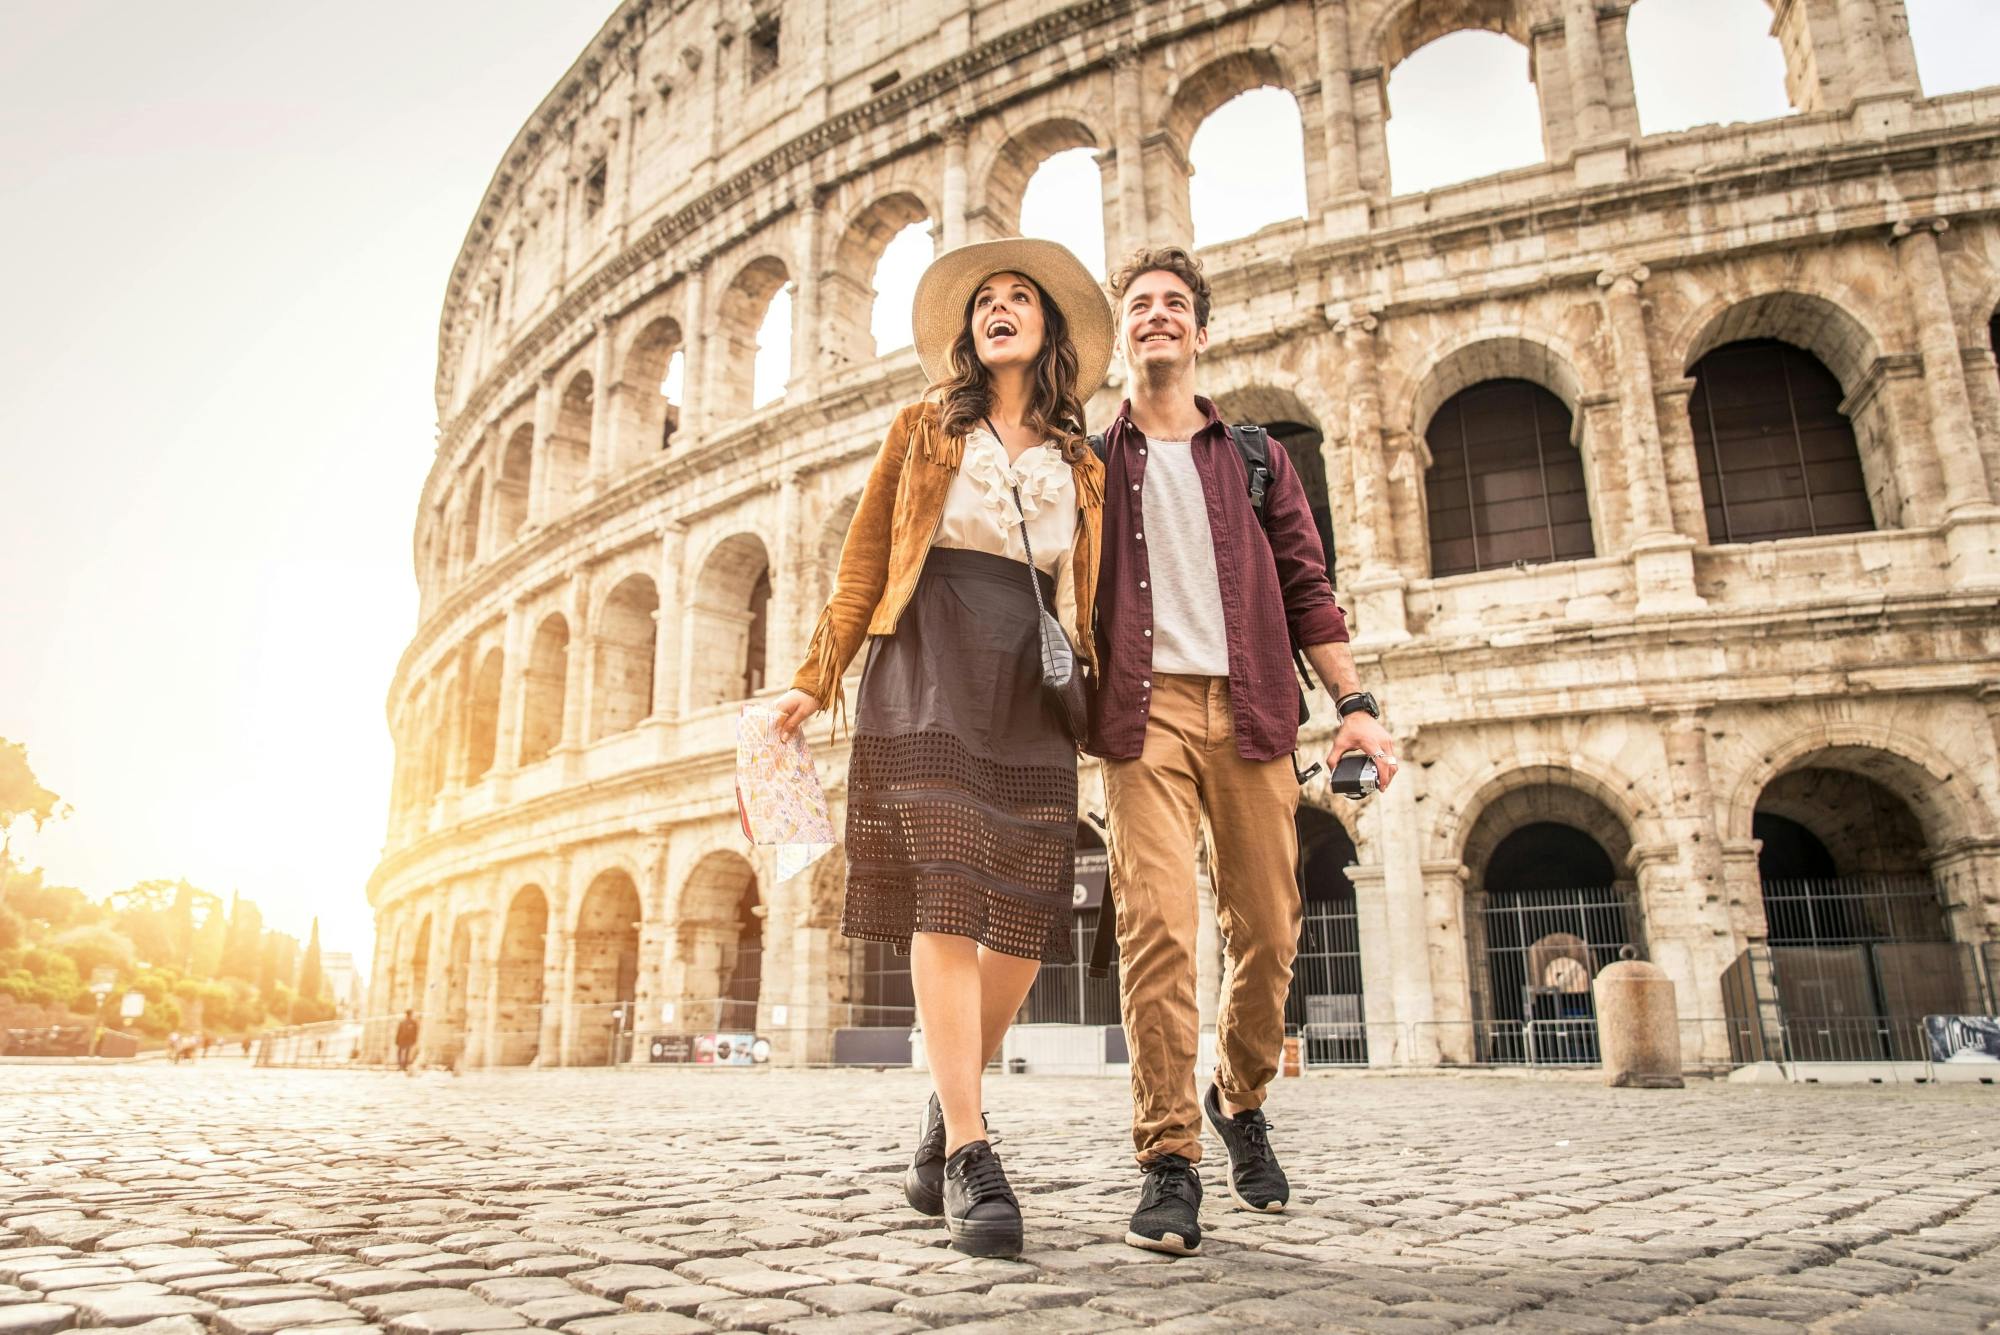 Colosseumin ja Forum Romanumin pääsyliput sisältäen multimediavideon